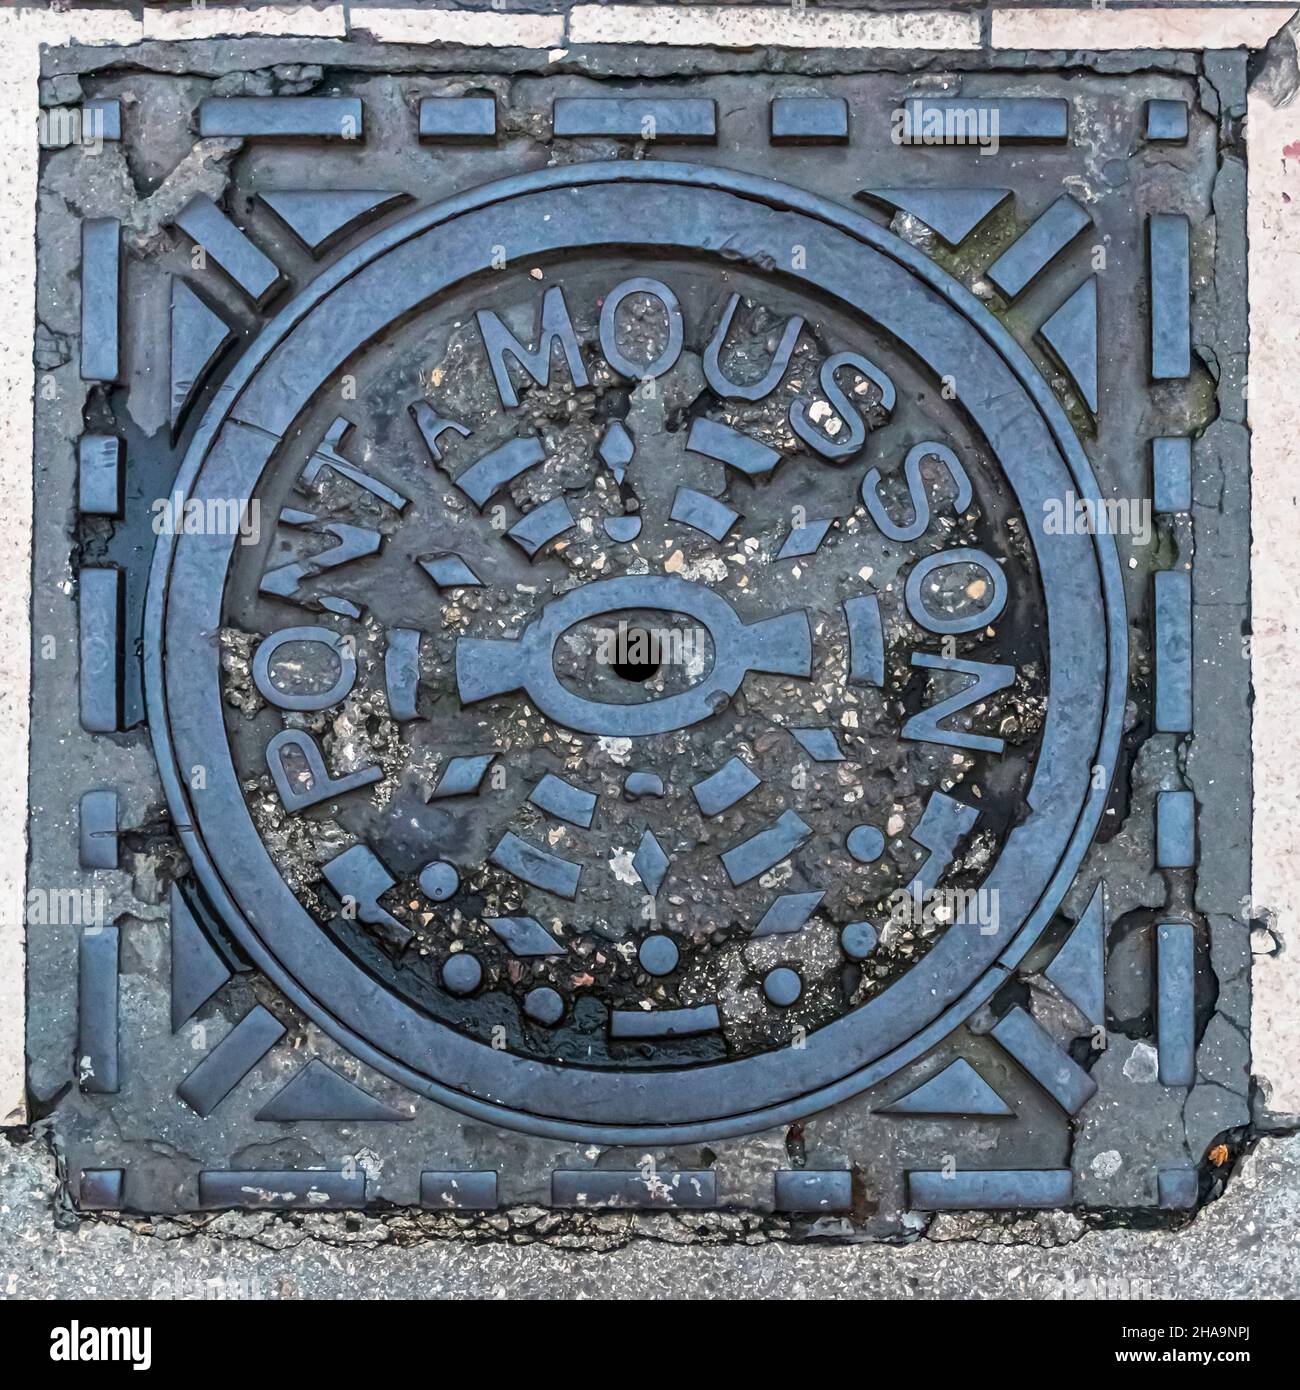 Manhole cover in Dijon, France Stock Photo